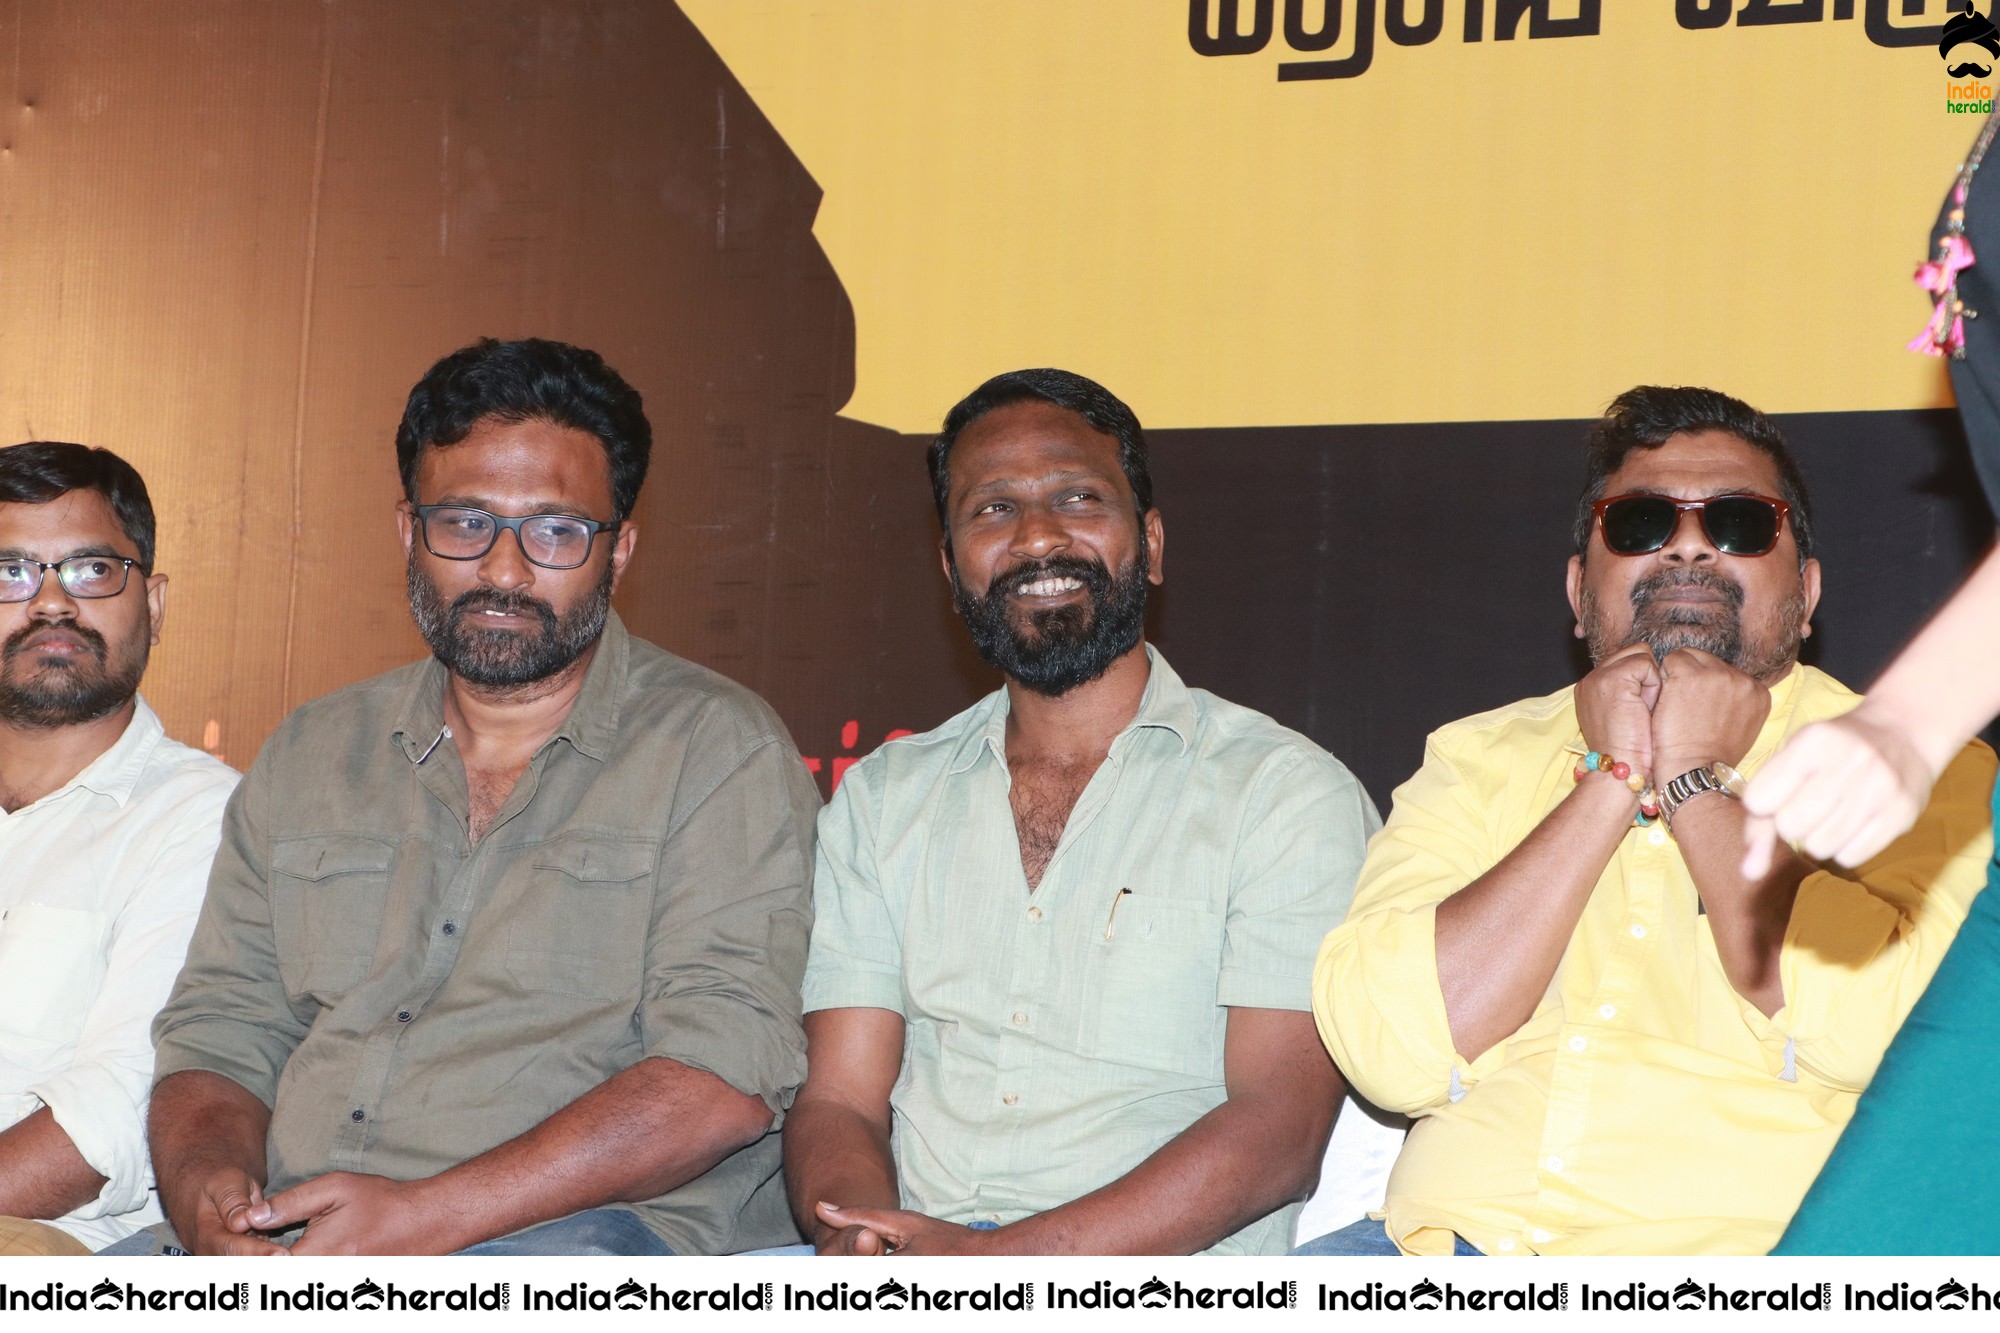 Baaram Tamil Movie Press Meet Stills